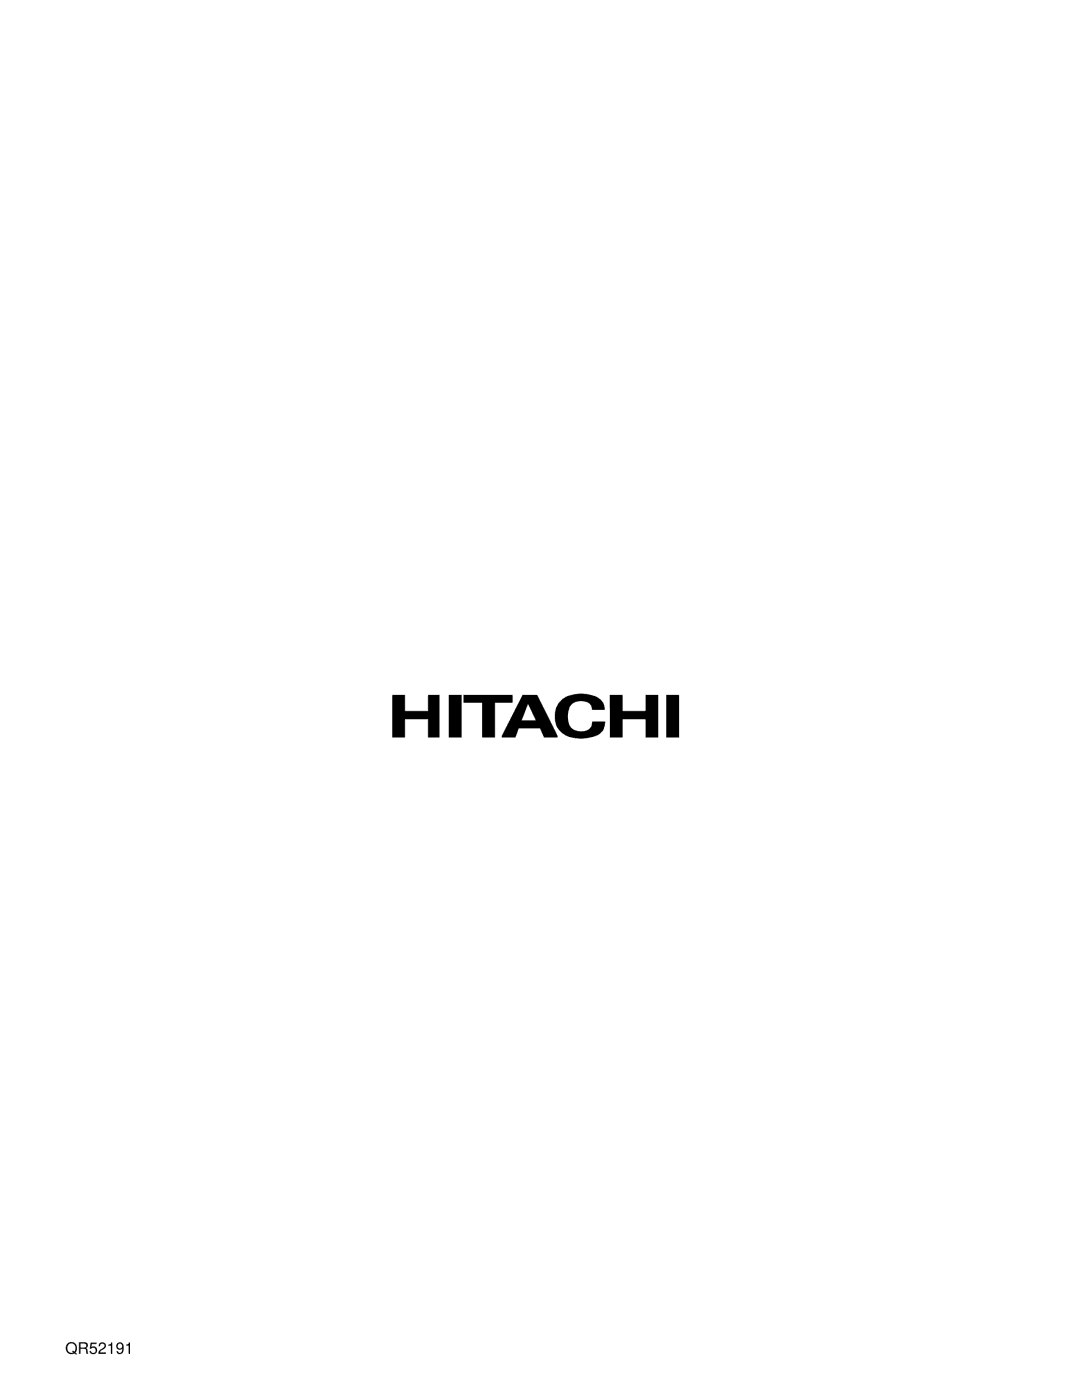 Hitachi 57UWX20B, 51UWX20B, 43FWX20B, 57GWX20B, 51GWX20B important safety instructions QR52191 